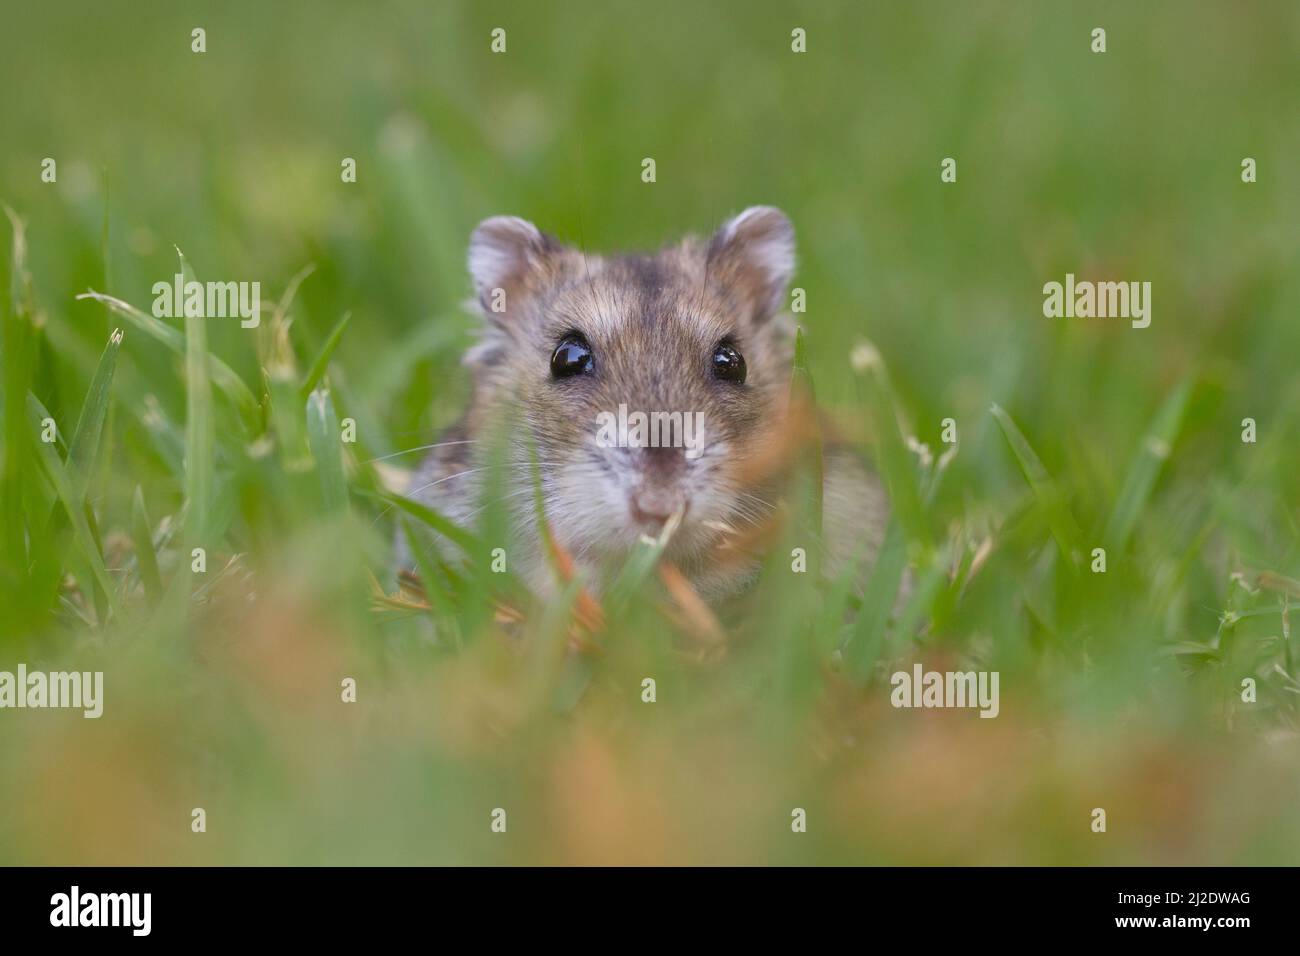 Close up et focus sélectif d'un hamster Djungarian (Phodopus sungorus), également connu sous le nom de hamster de Sibérie, sur la pelouse. Photographié en Israël en juillet Banque D'Images